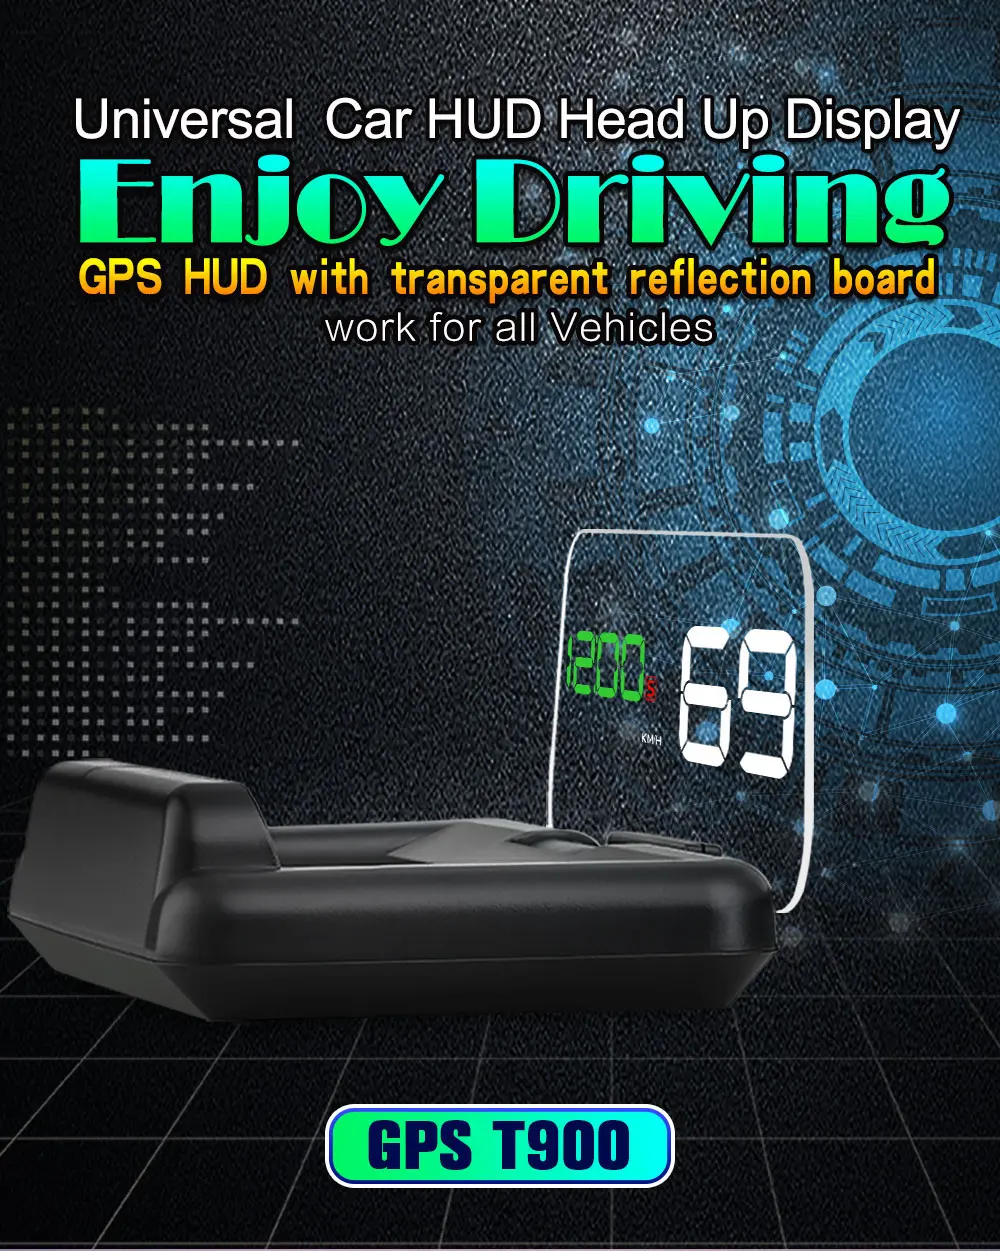 Автомобильный робот умный hud Дисплей автомобиля Спидометр дисплей автомобиля carrobot hud Дисплей с головным убором цифровой GPS Спидометр/hud Исследуйте